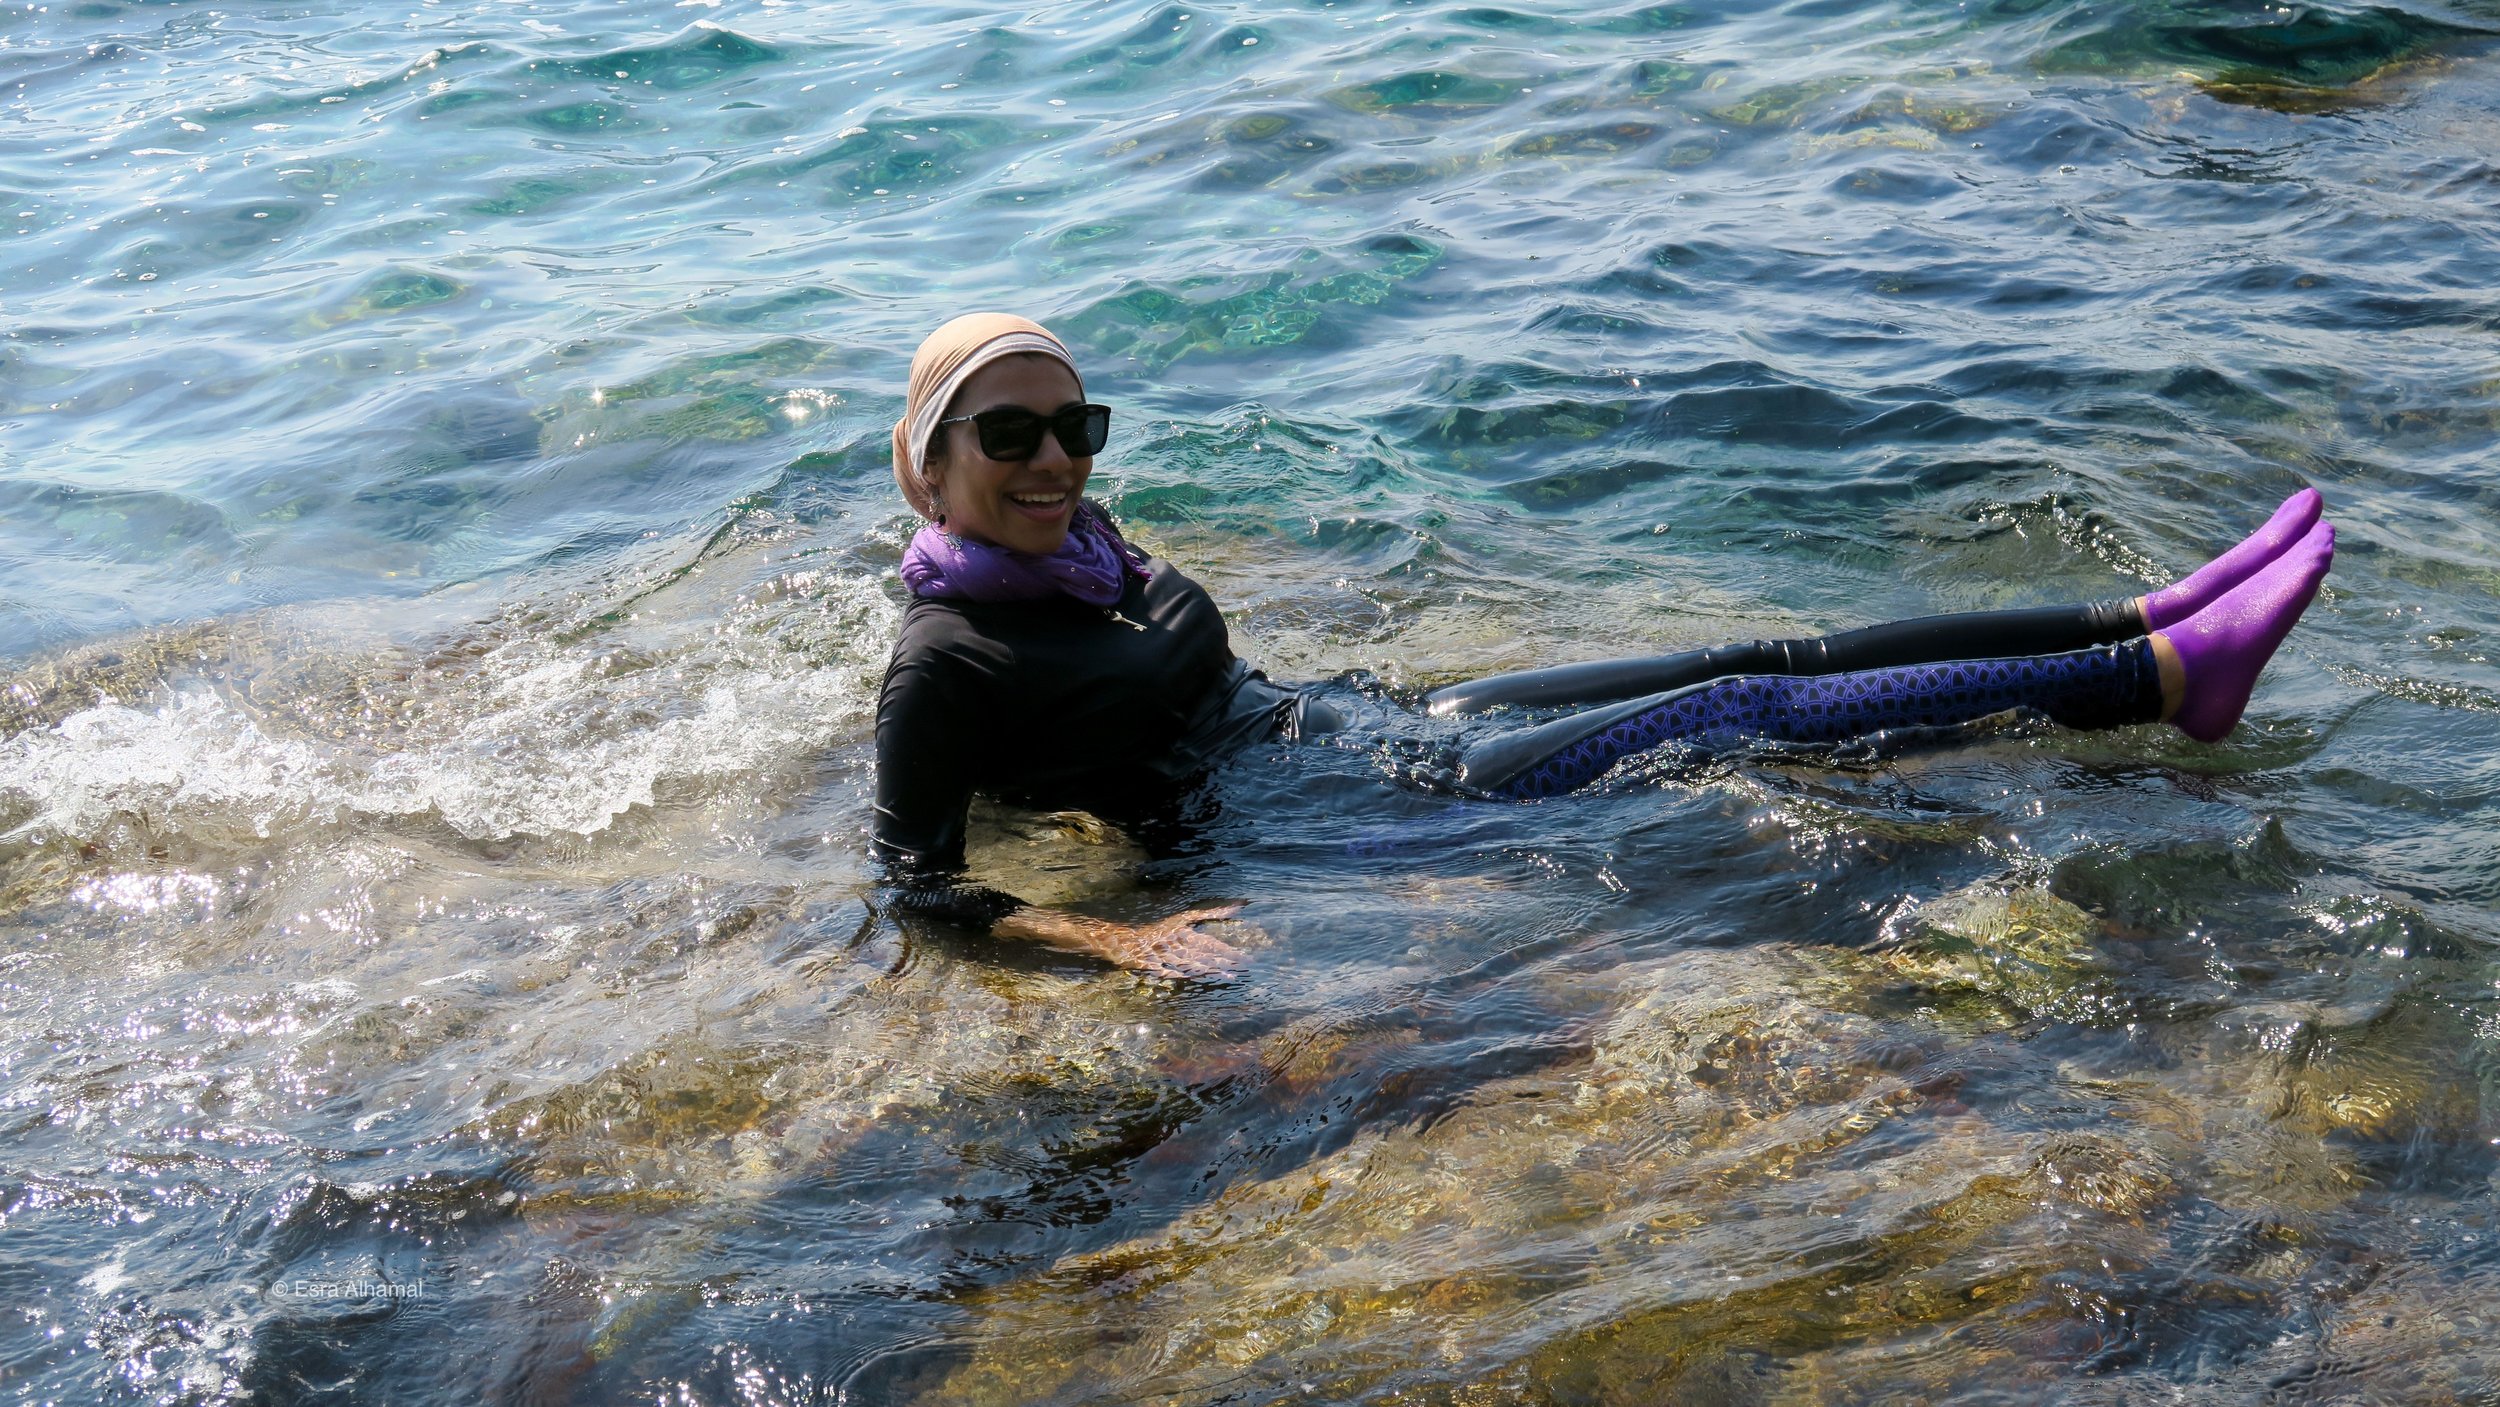   Improvised Modest Swimsuit: Water proof leggings and long sleeves   top + scarves + Waterproof socks  